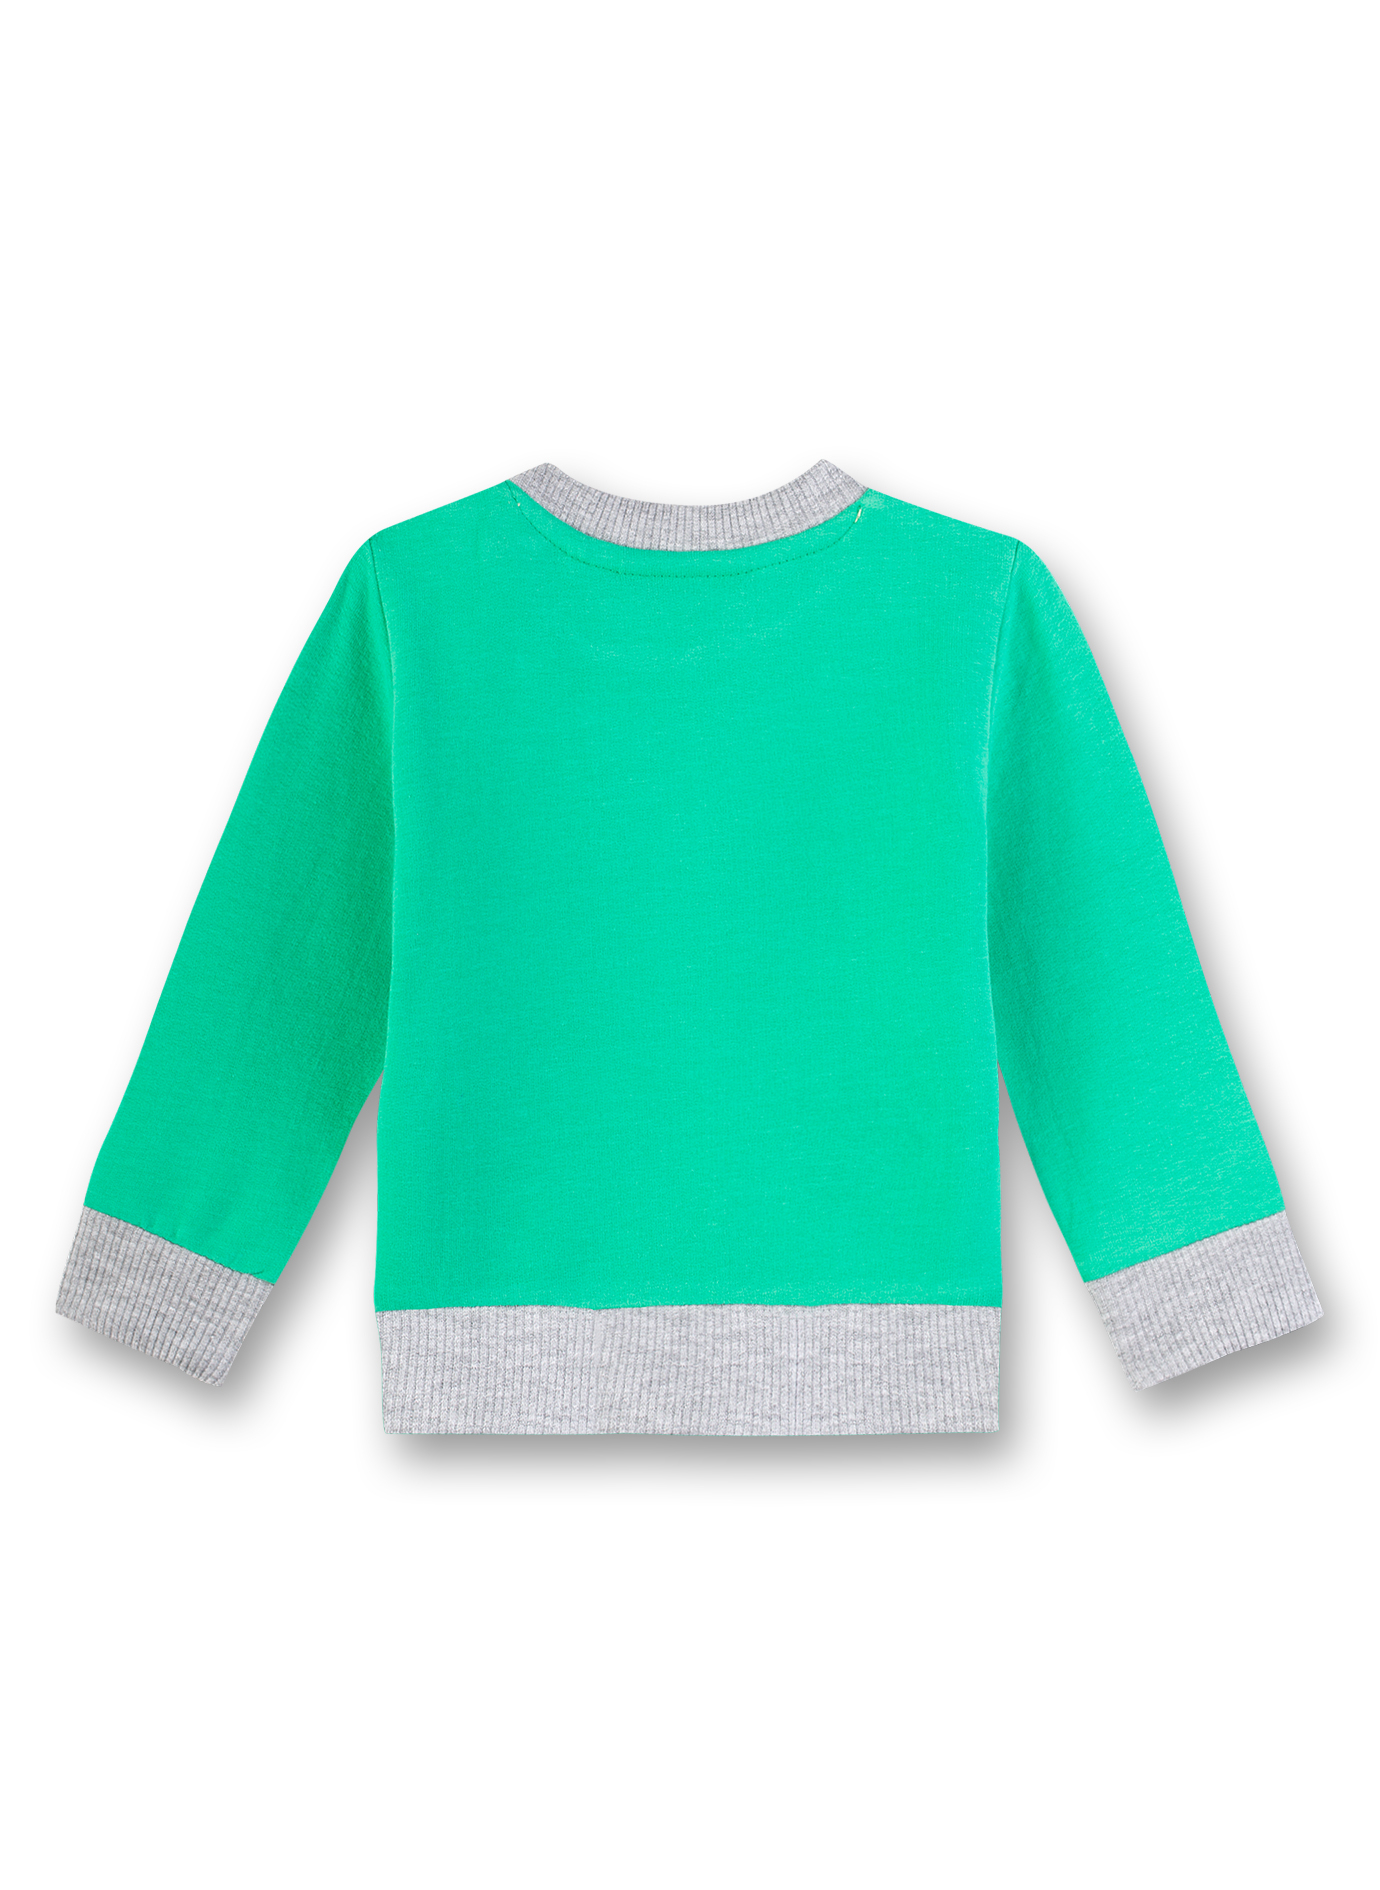 Jungen-Sweatshirt Grün Little Friends